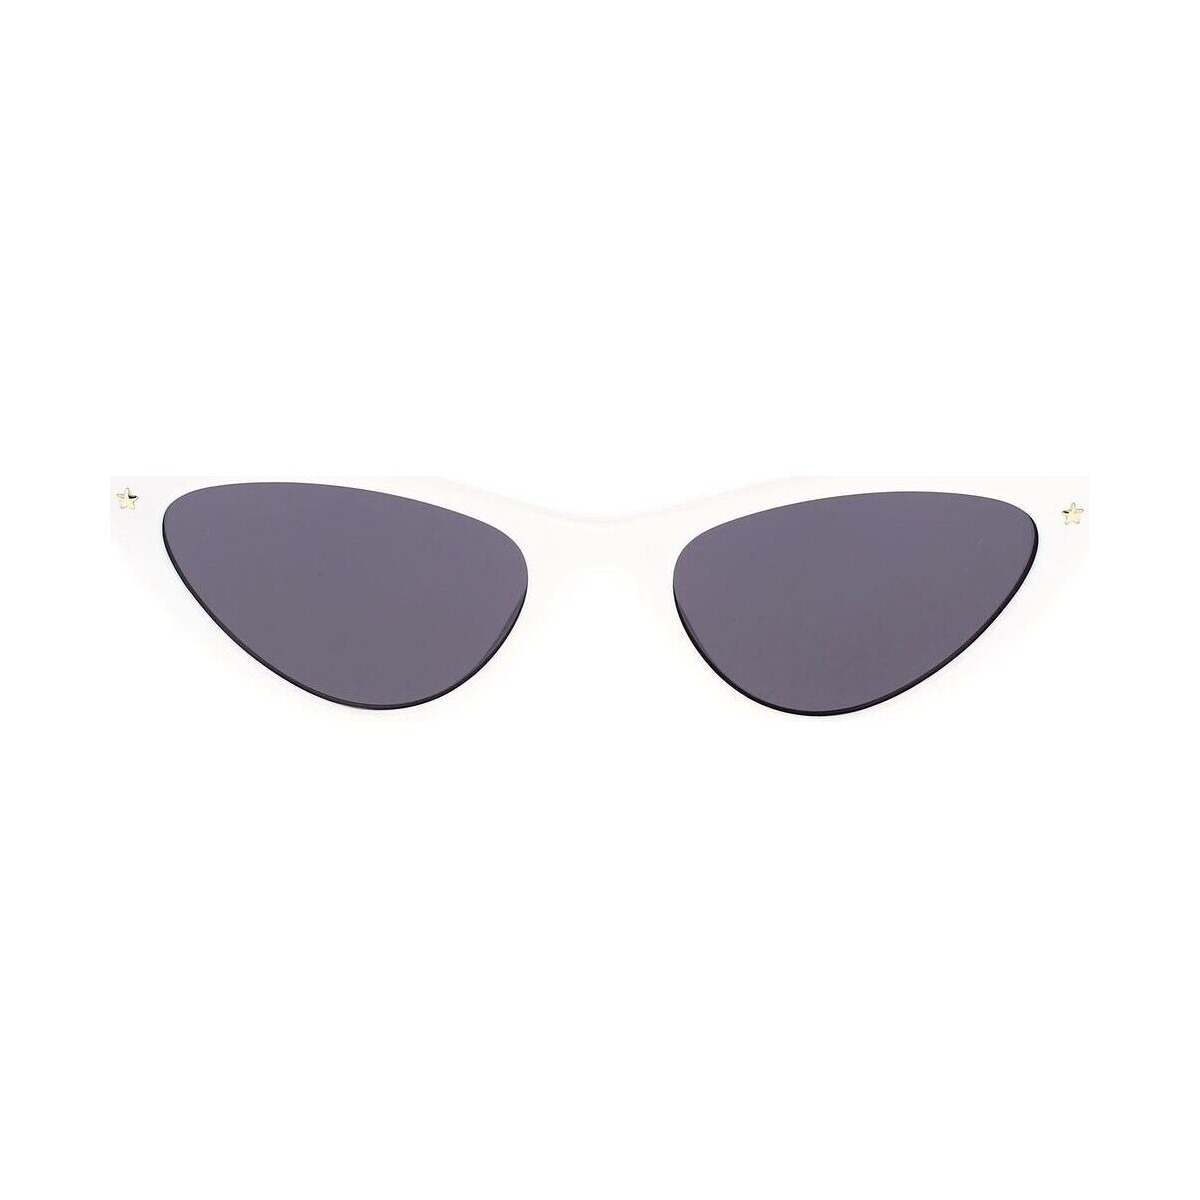 Spartoo - Sunglasses in White - Chiara Ferragni Woman GOOFASH